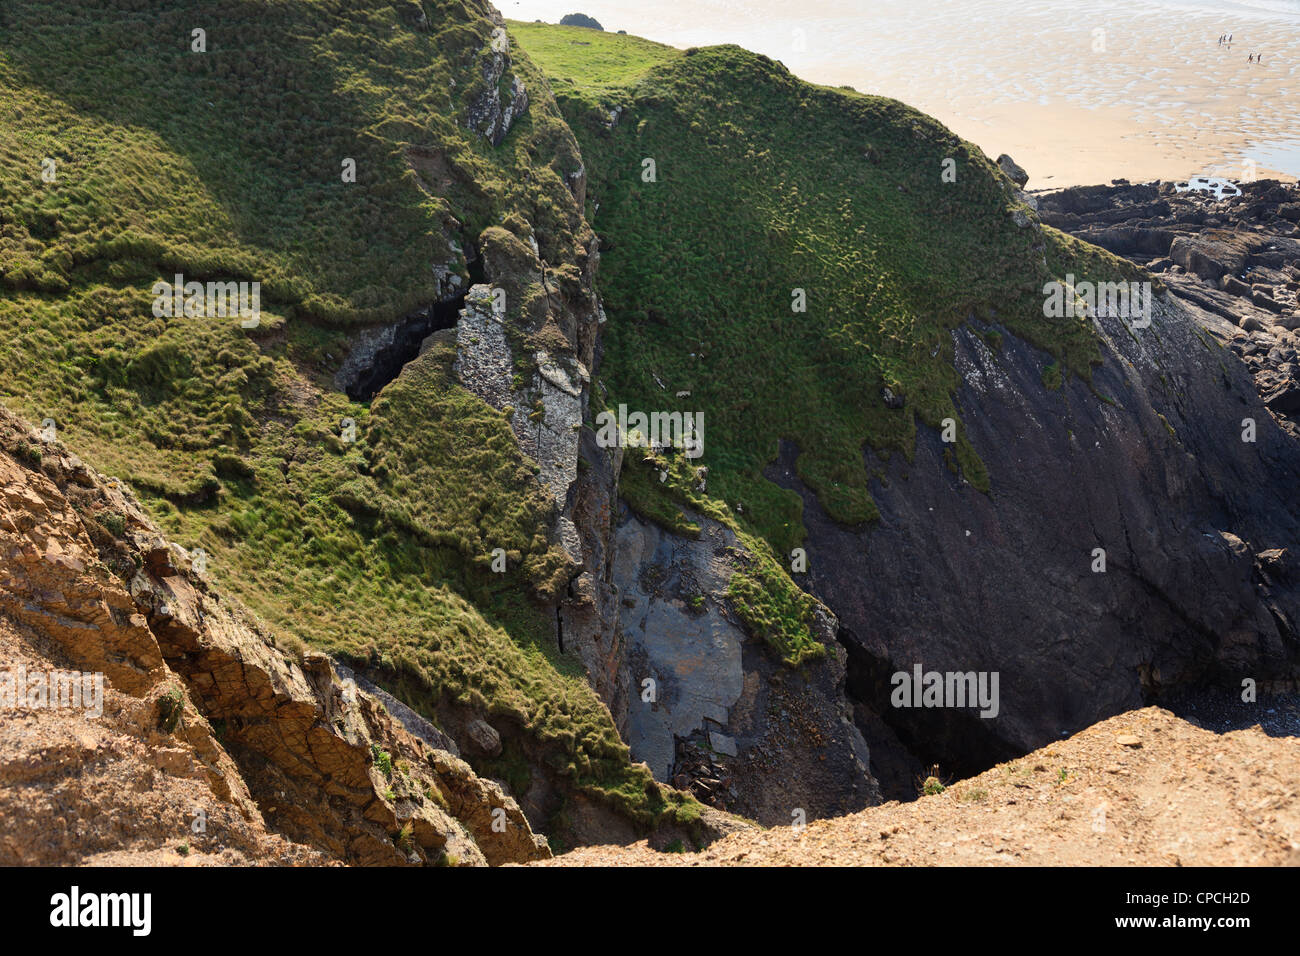 Fissuration des roches et le bannissement de l'érosion des falaises qui surplombent la plage de Bude, Cornwall, England, UK, Grande-Bretagne Banque D'Images